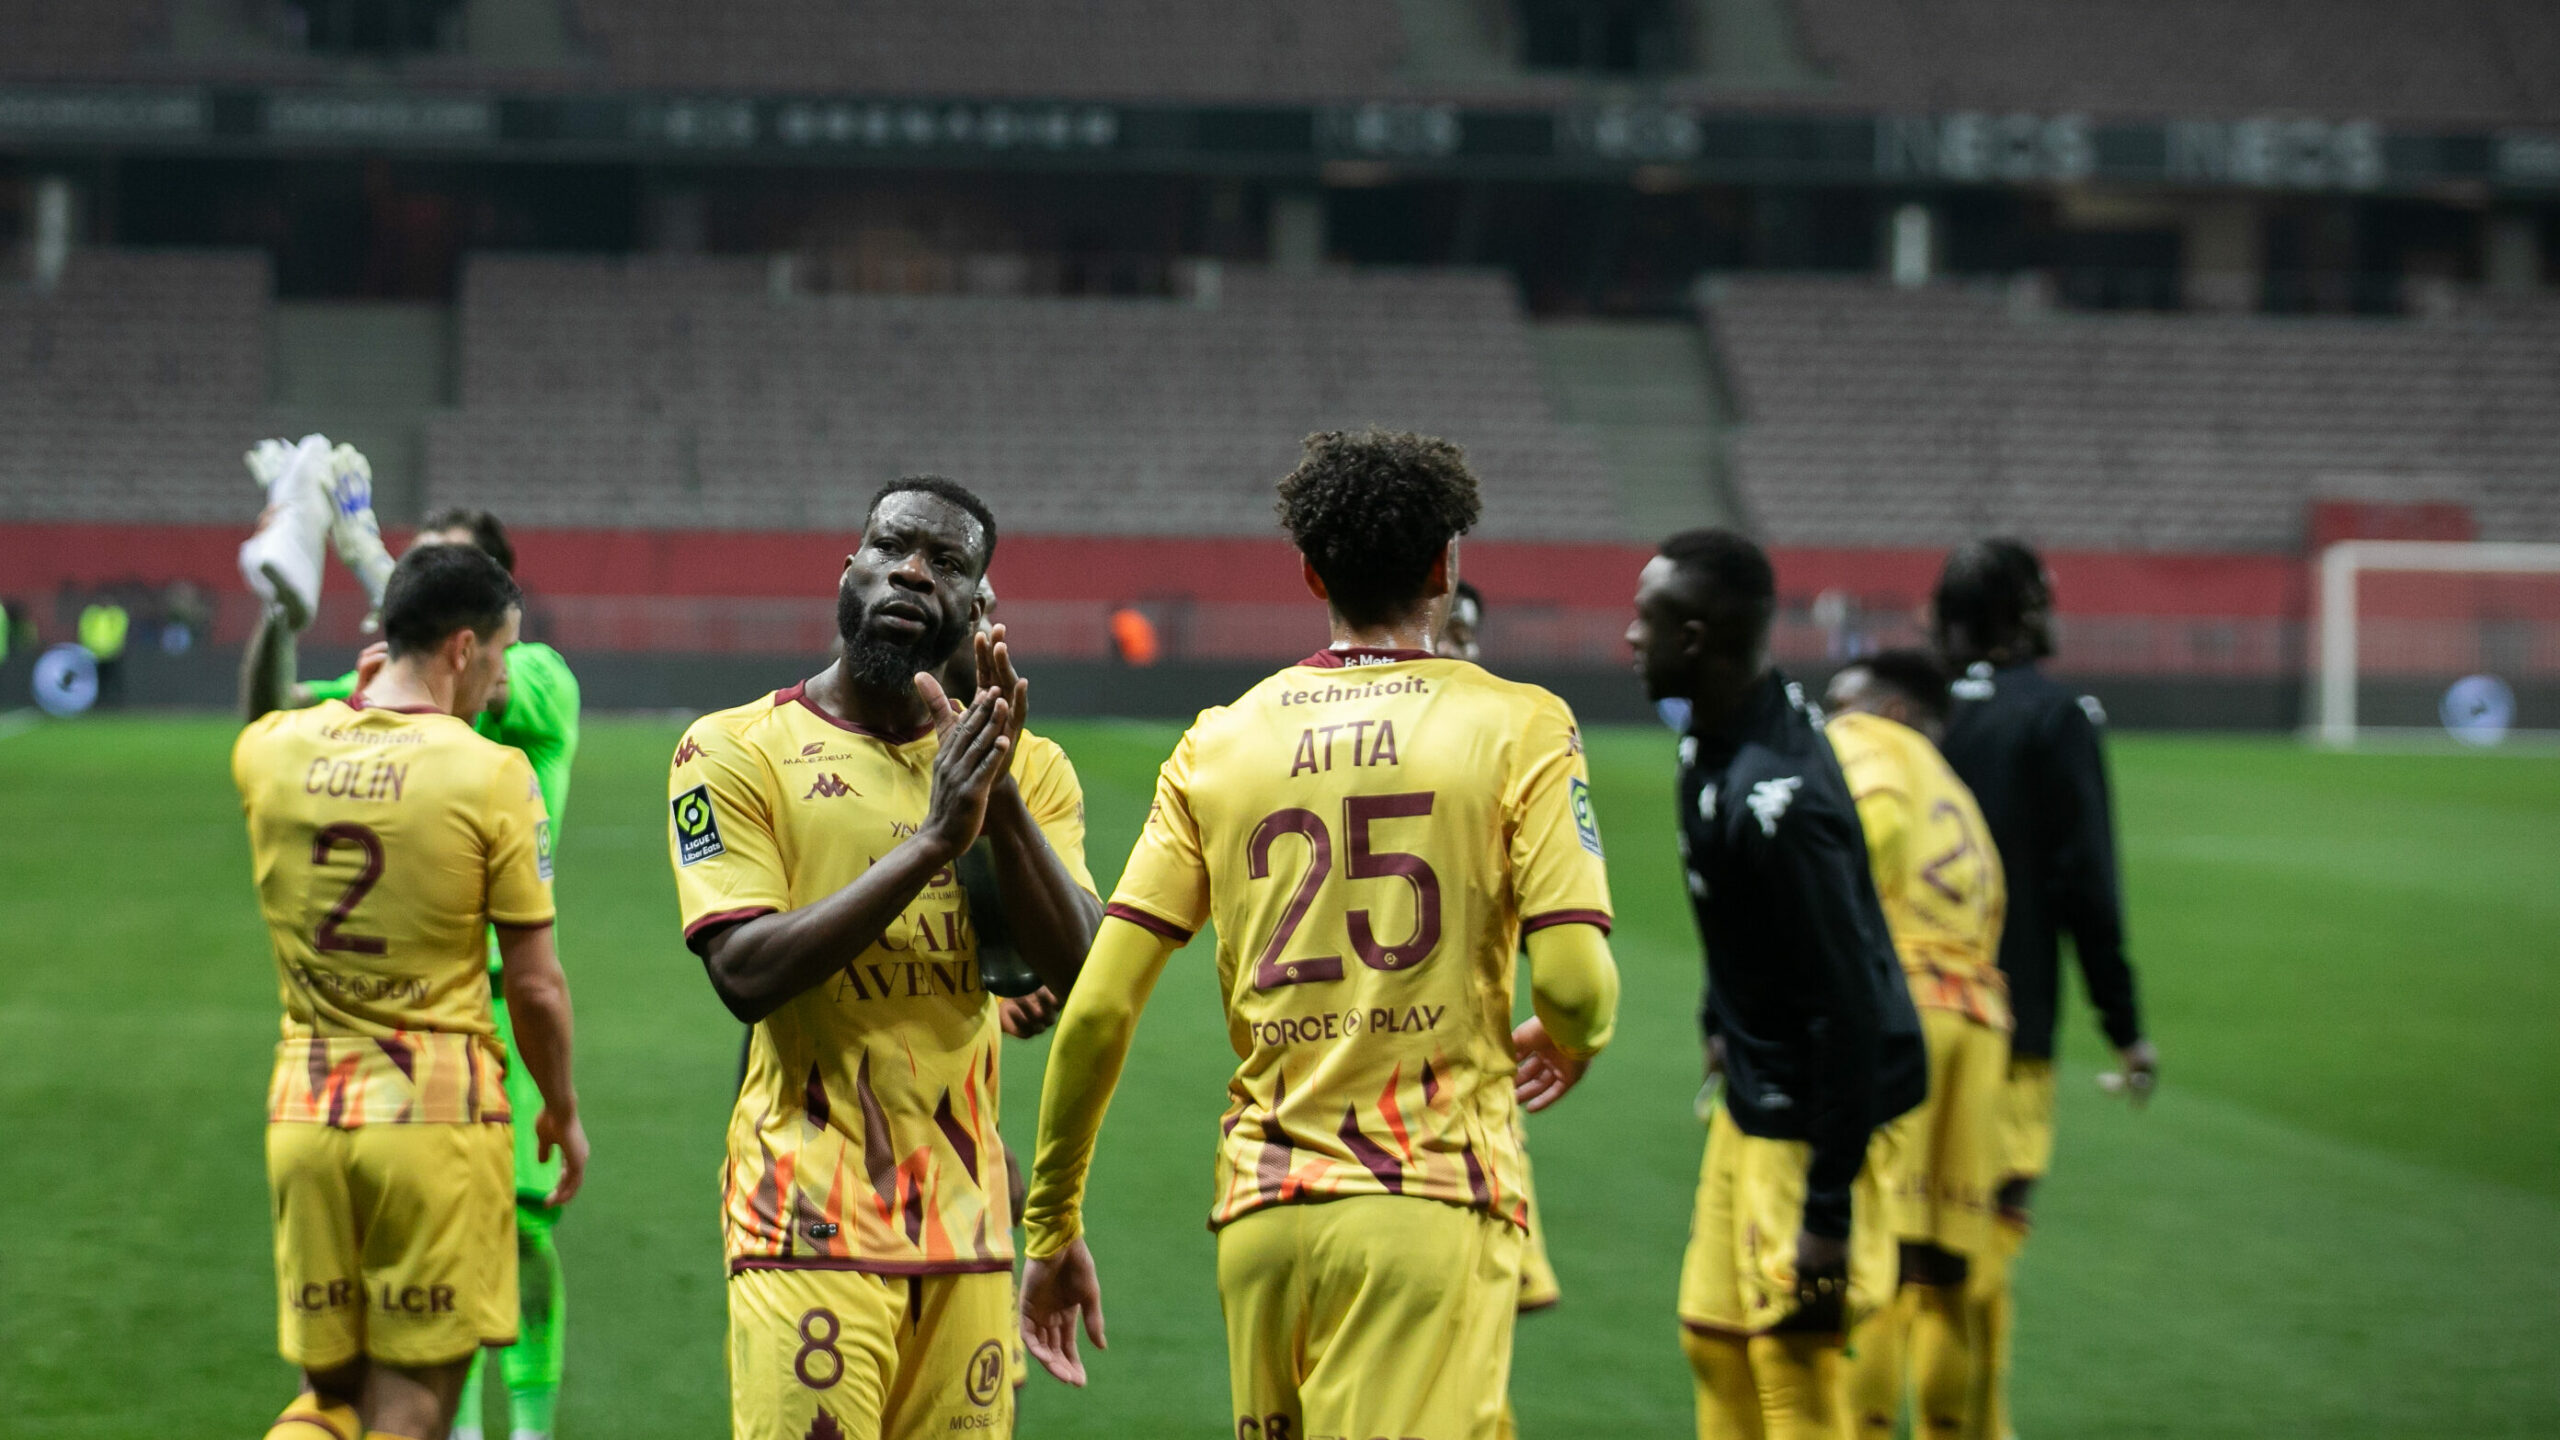 OGC Nice - FC Metz : la série noire se poursuit - Let's Go Metz